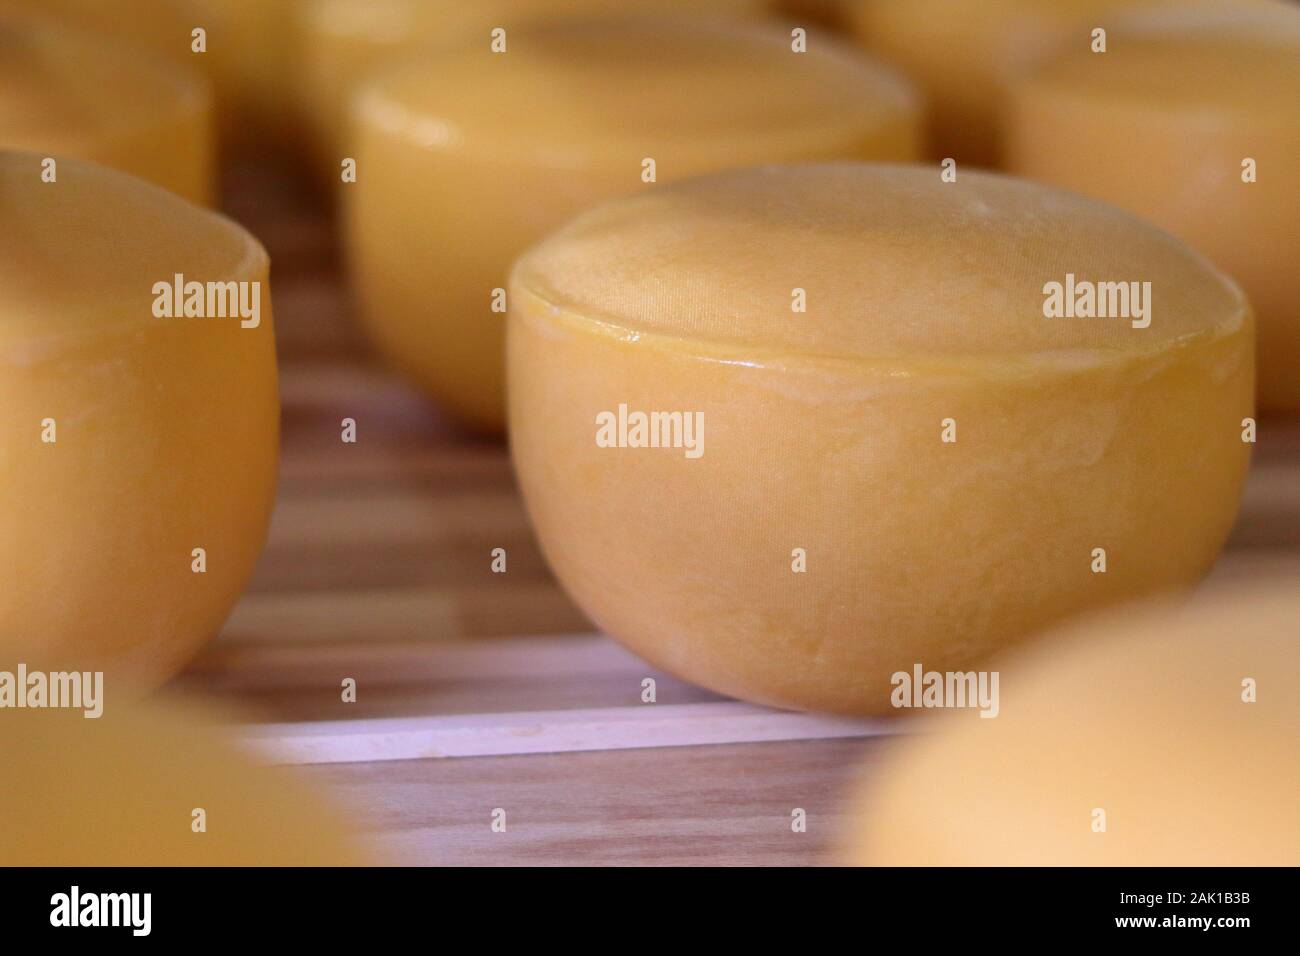 pani gialli di formaggio duro immagazzinati in una cantina fredda di caseificio Foto Stock